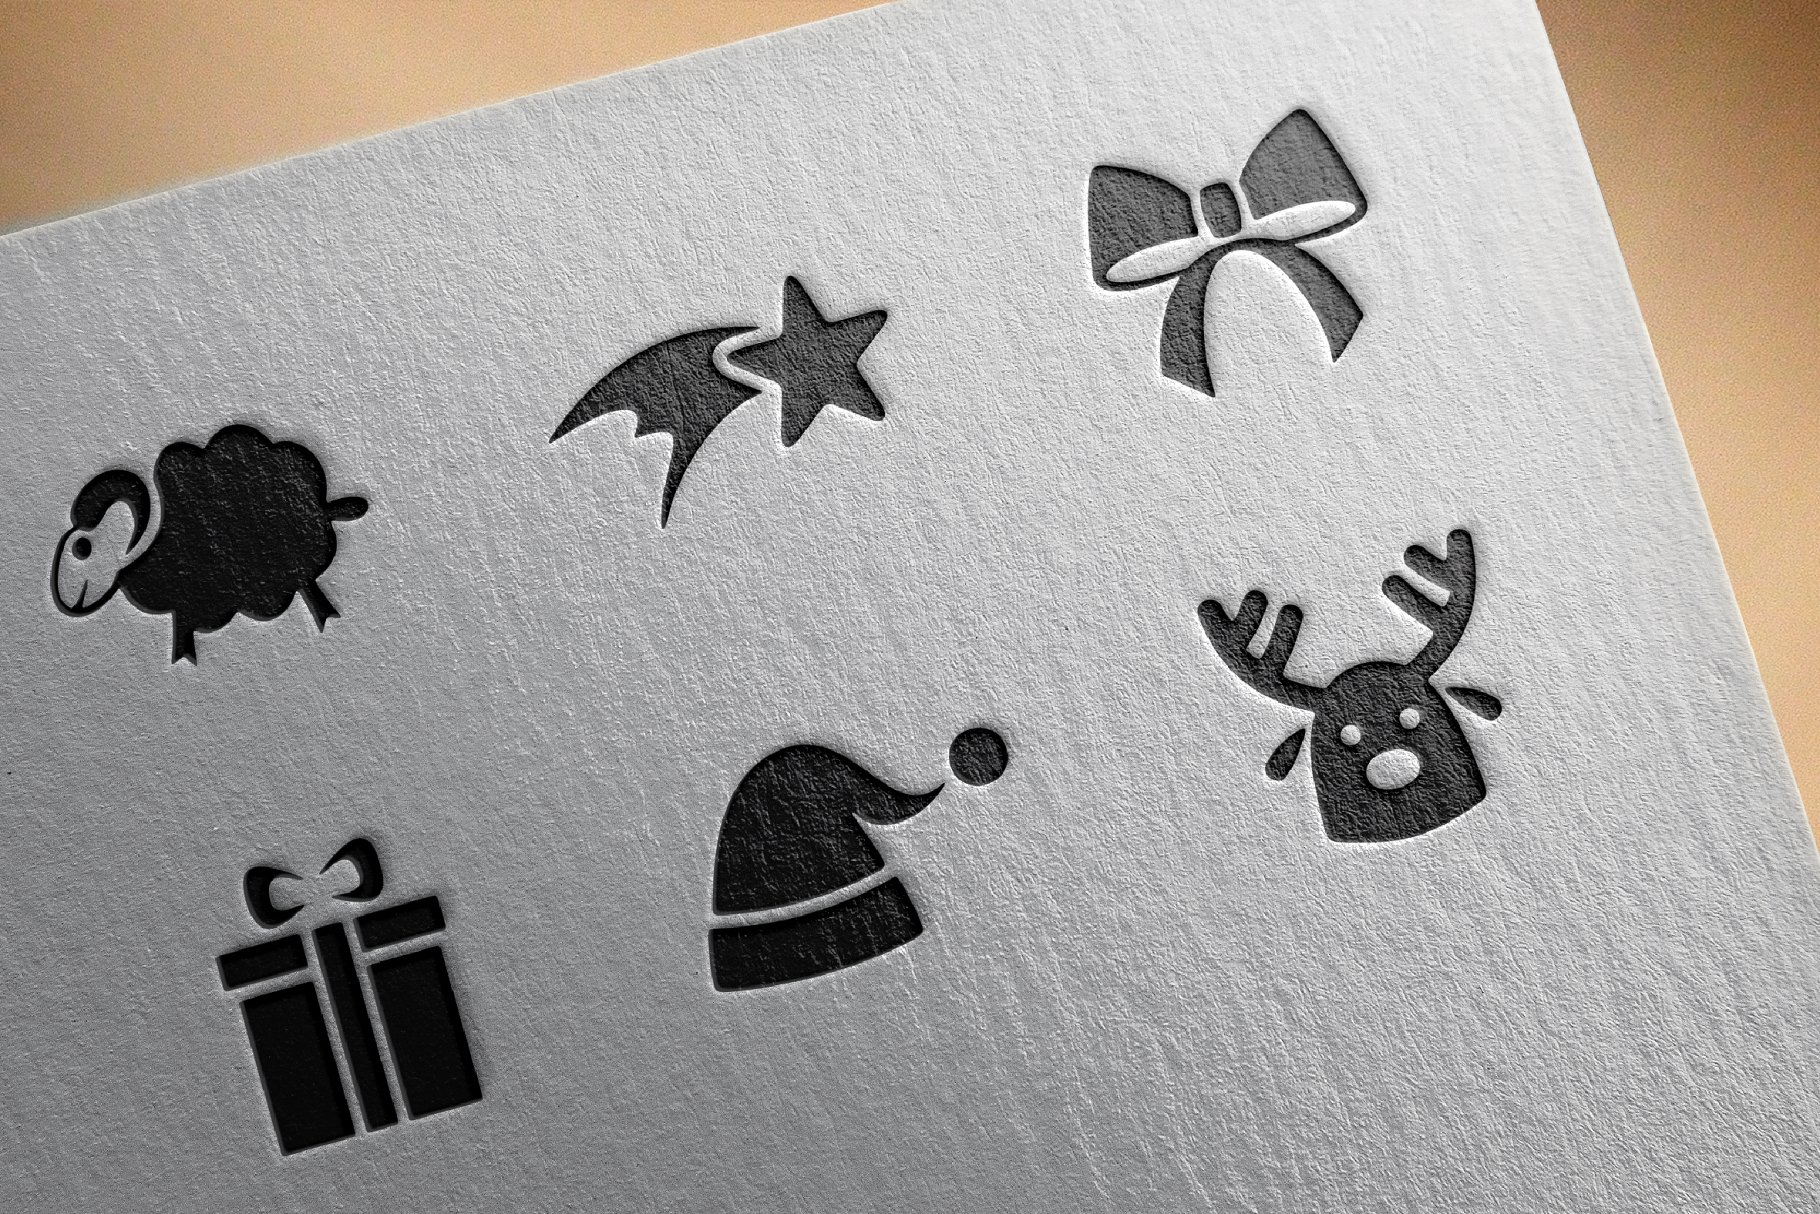 简单的圣诞节图标 Merry Christmas icons